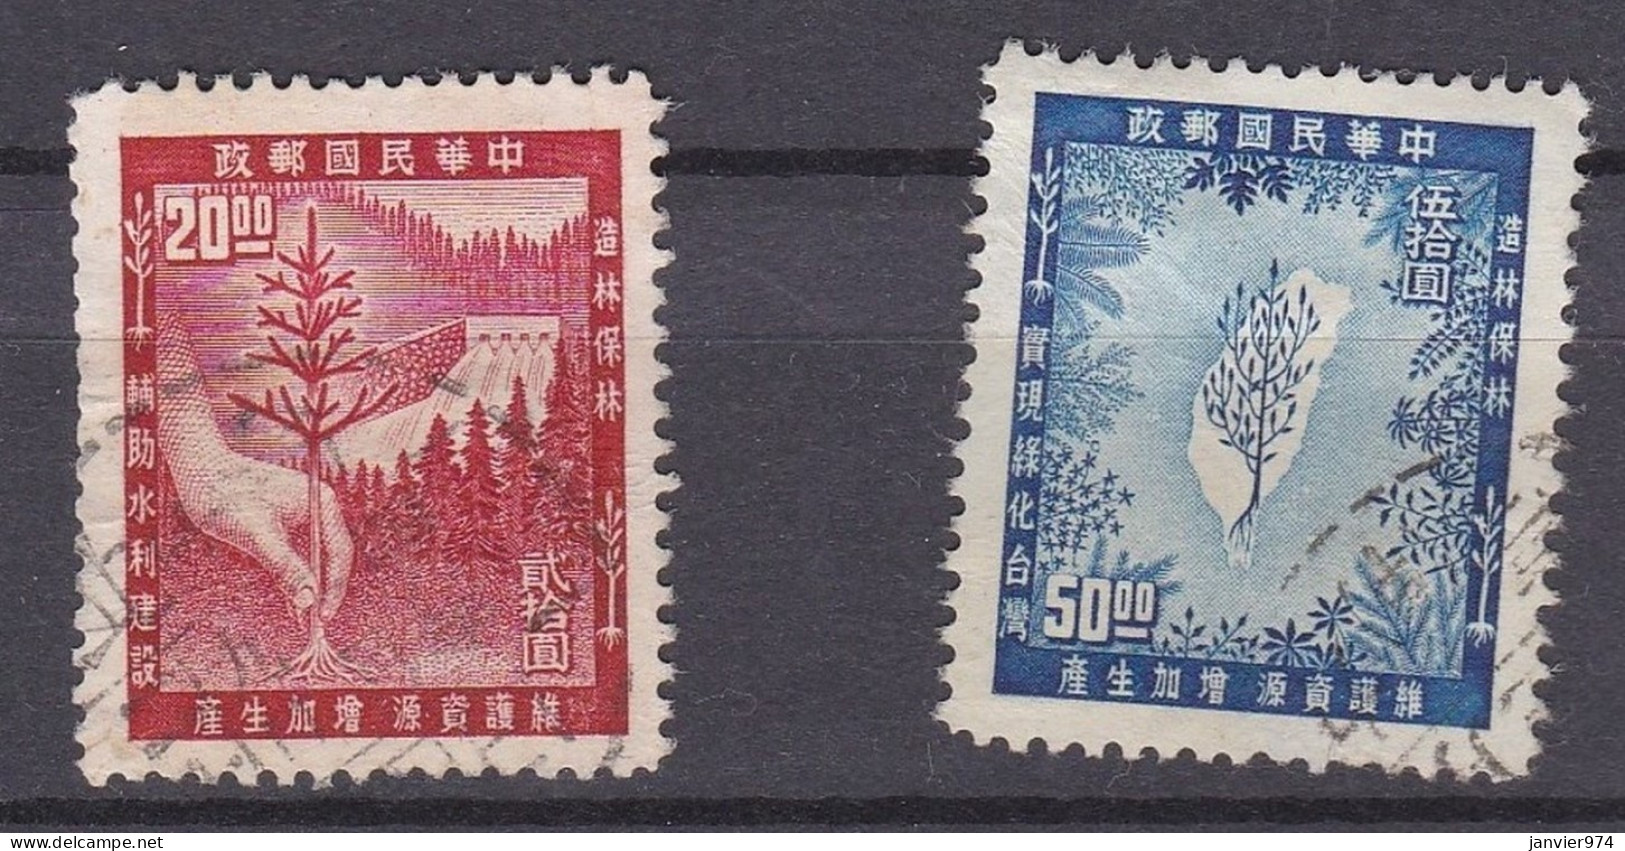 1955, Campagne De Reboisement , La Série Complète 210 à 211, 2 Timbres, Scan Recto Verso - Used Stamps